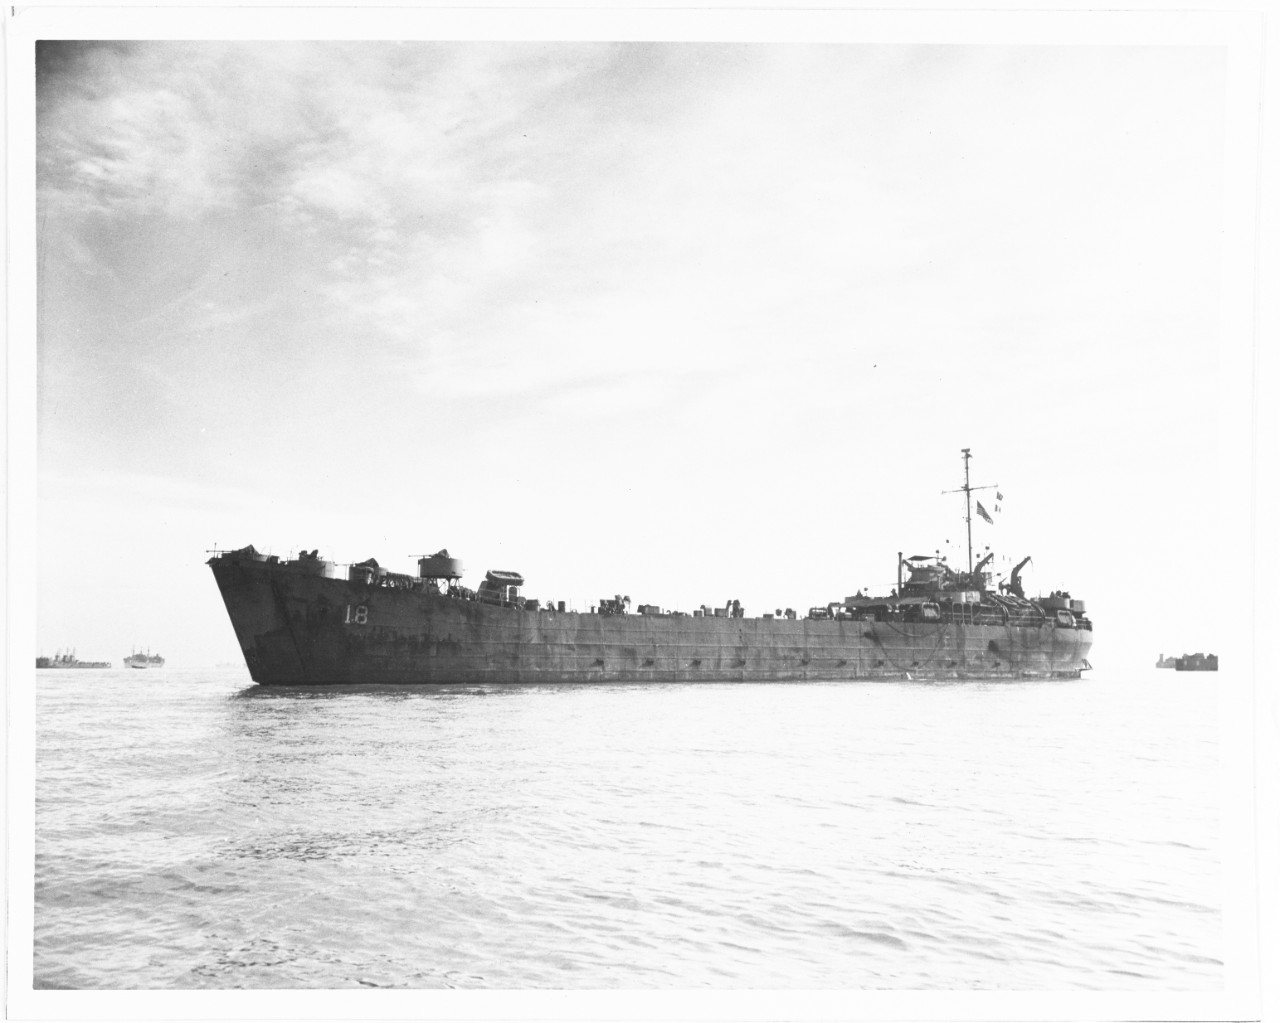 USS LST-18